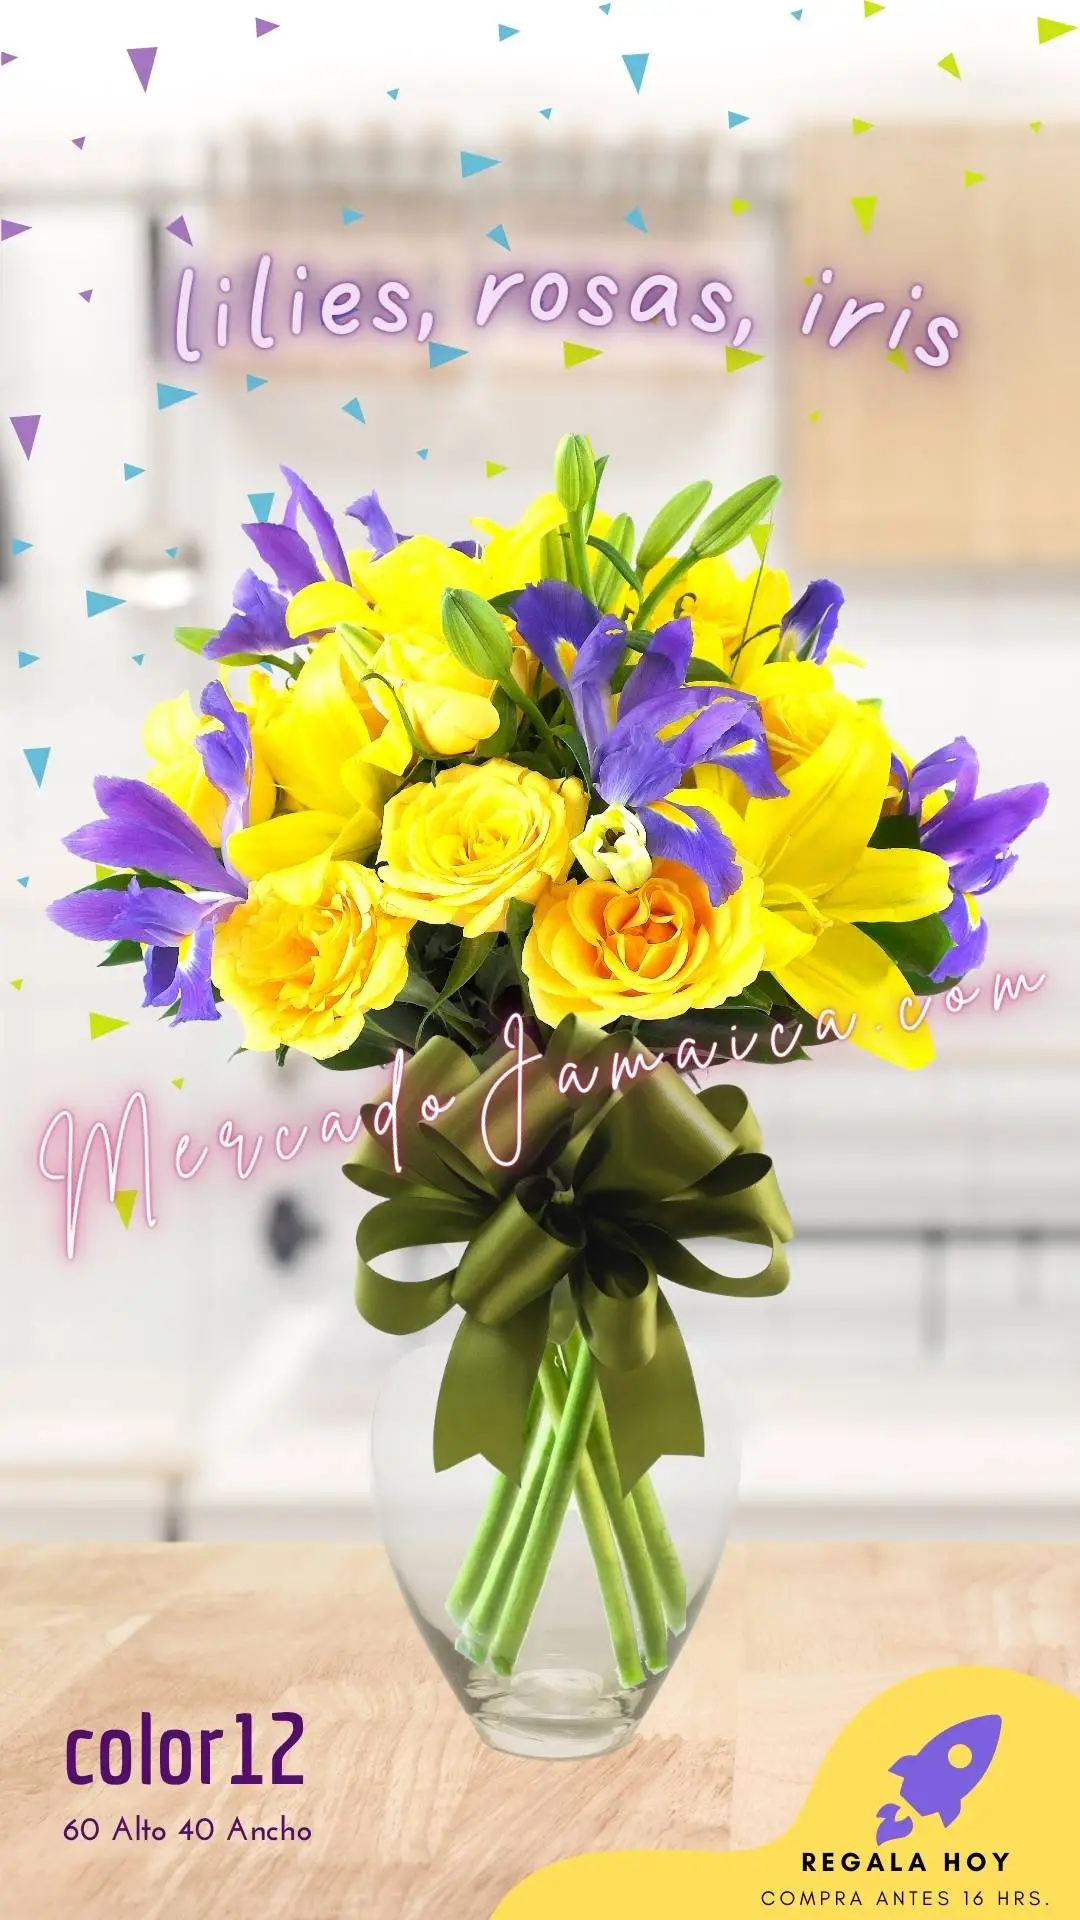 35 Flores en vibrante arreglo floral con iris y lilies